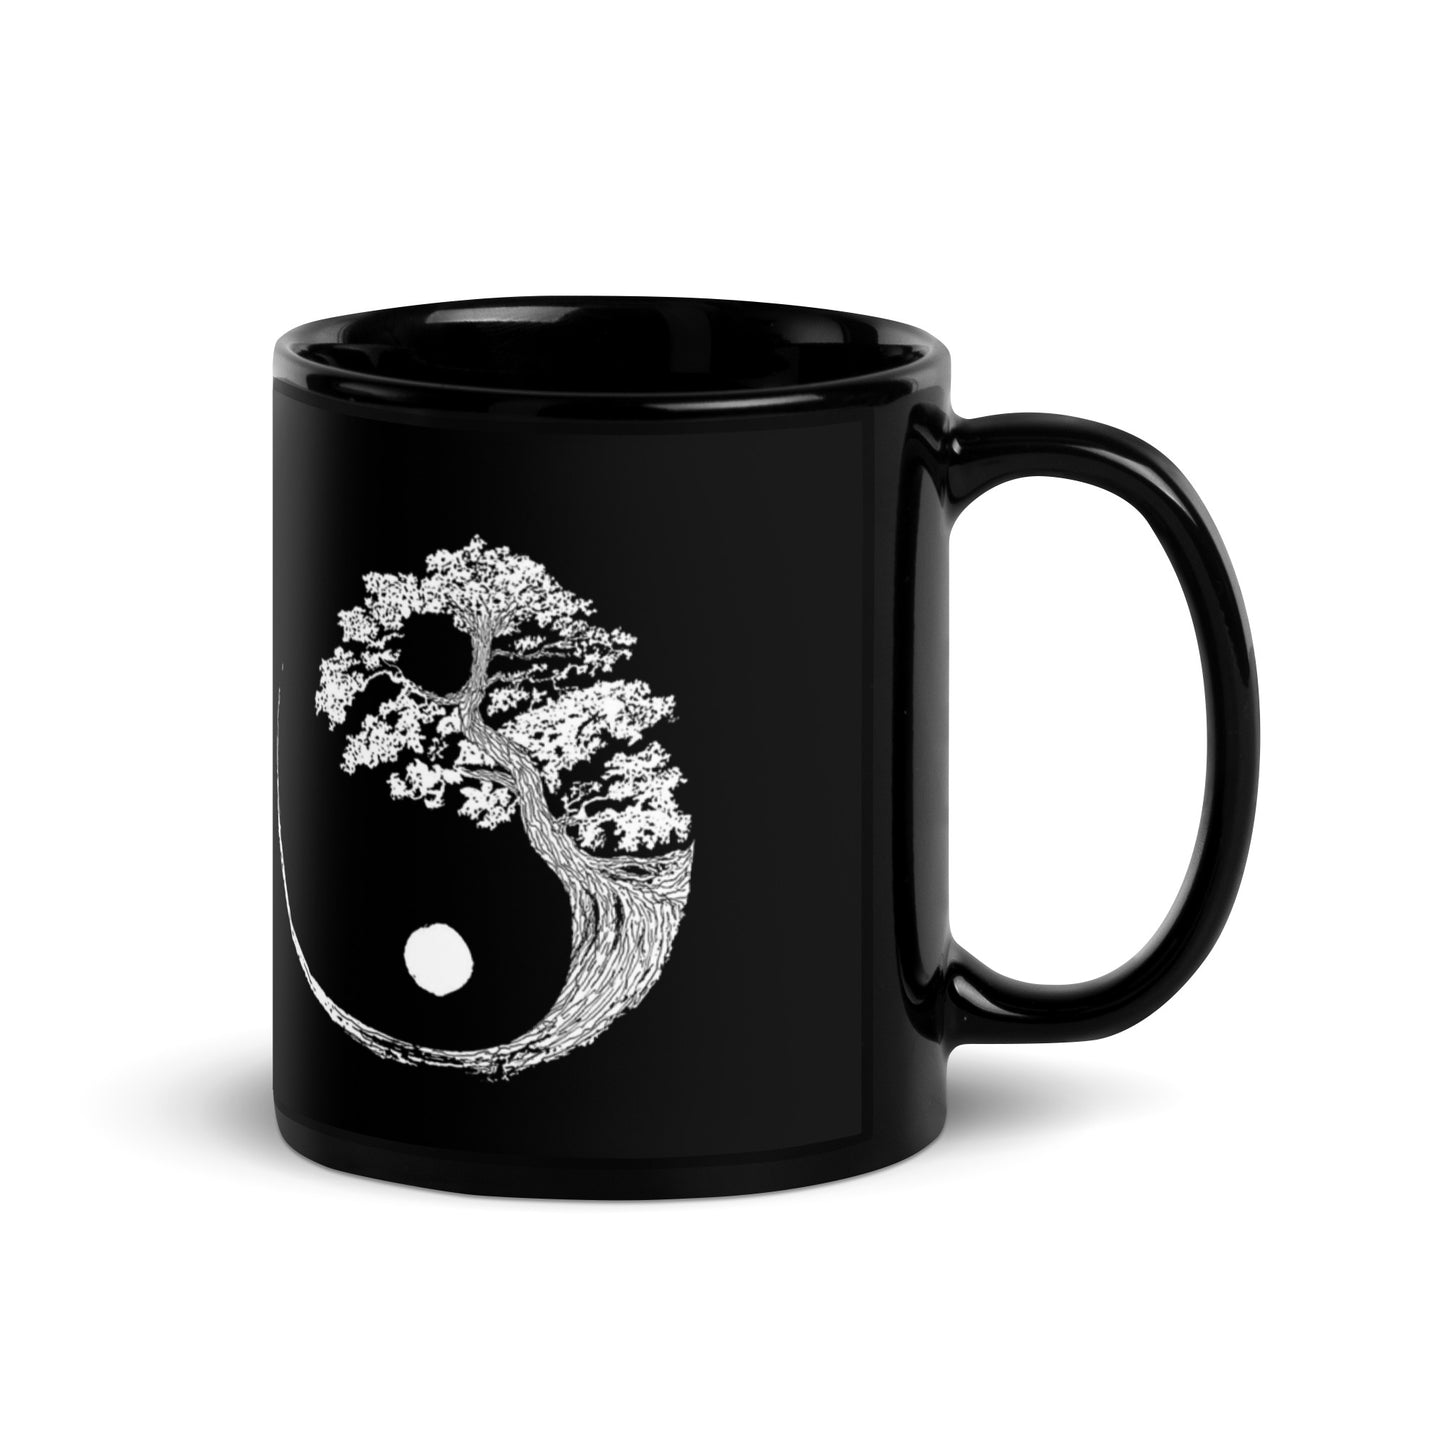 Yin&Yang tree of life, Mug